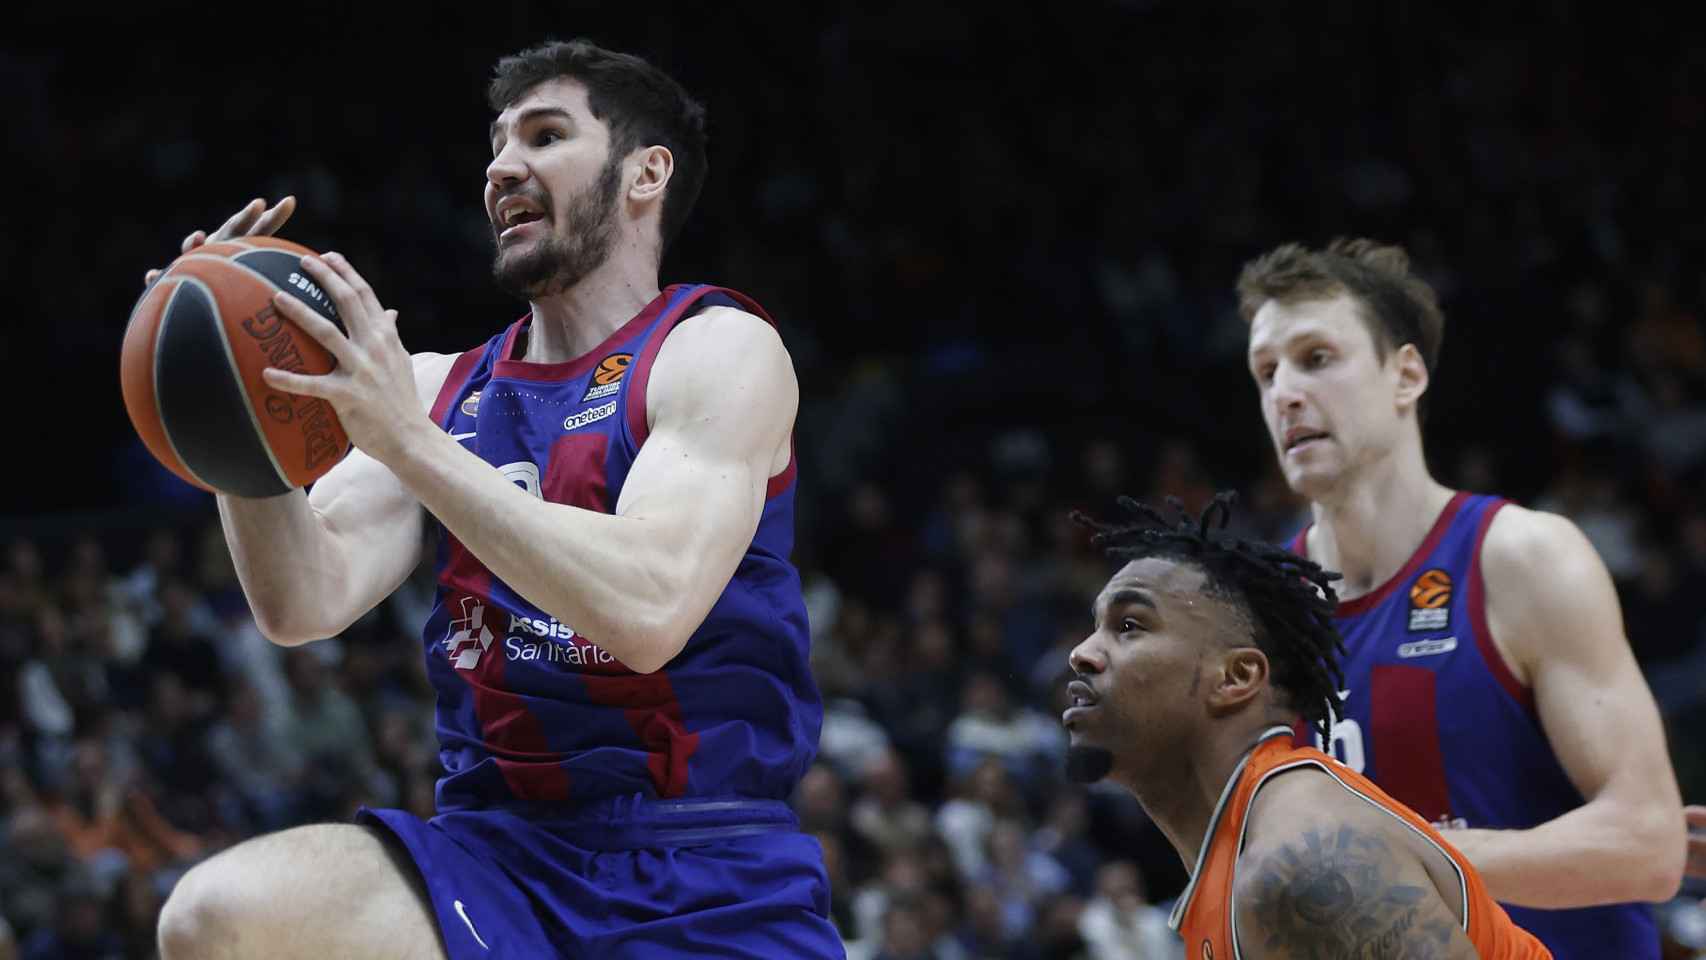 Brizuela busca la canasta en una jugada contra el Valencia basket